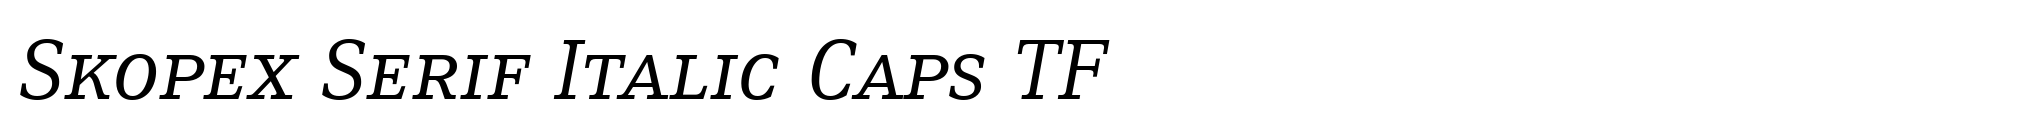 Skopex Serif Italic Caps TF image